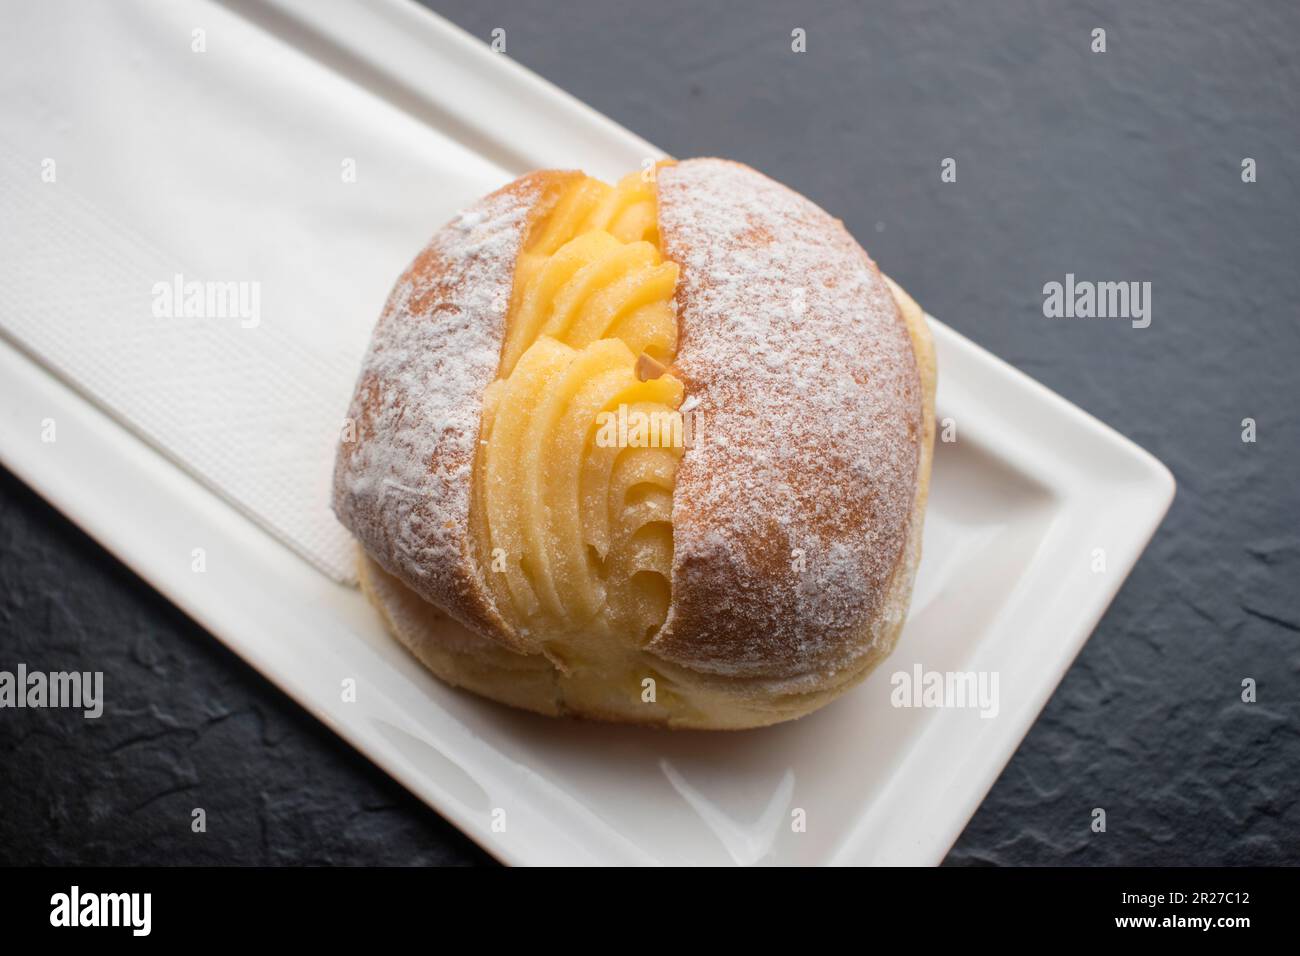 Portugiesischer Donut oder Berliner mit Eiercreme auf einem weißen Teller. Es besteht aus einem gebratenen süßen Teig gefüllt mit Sahne und Zucker. Stockfoto